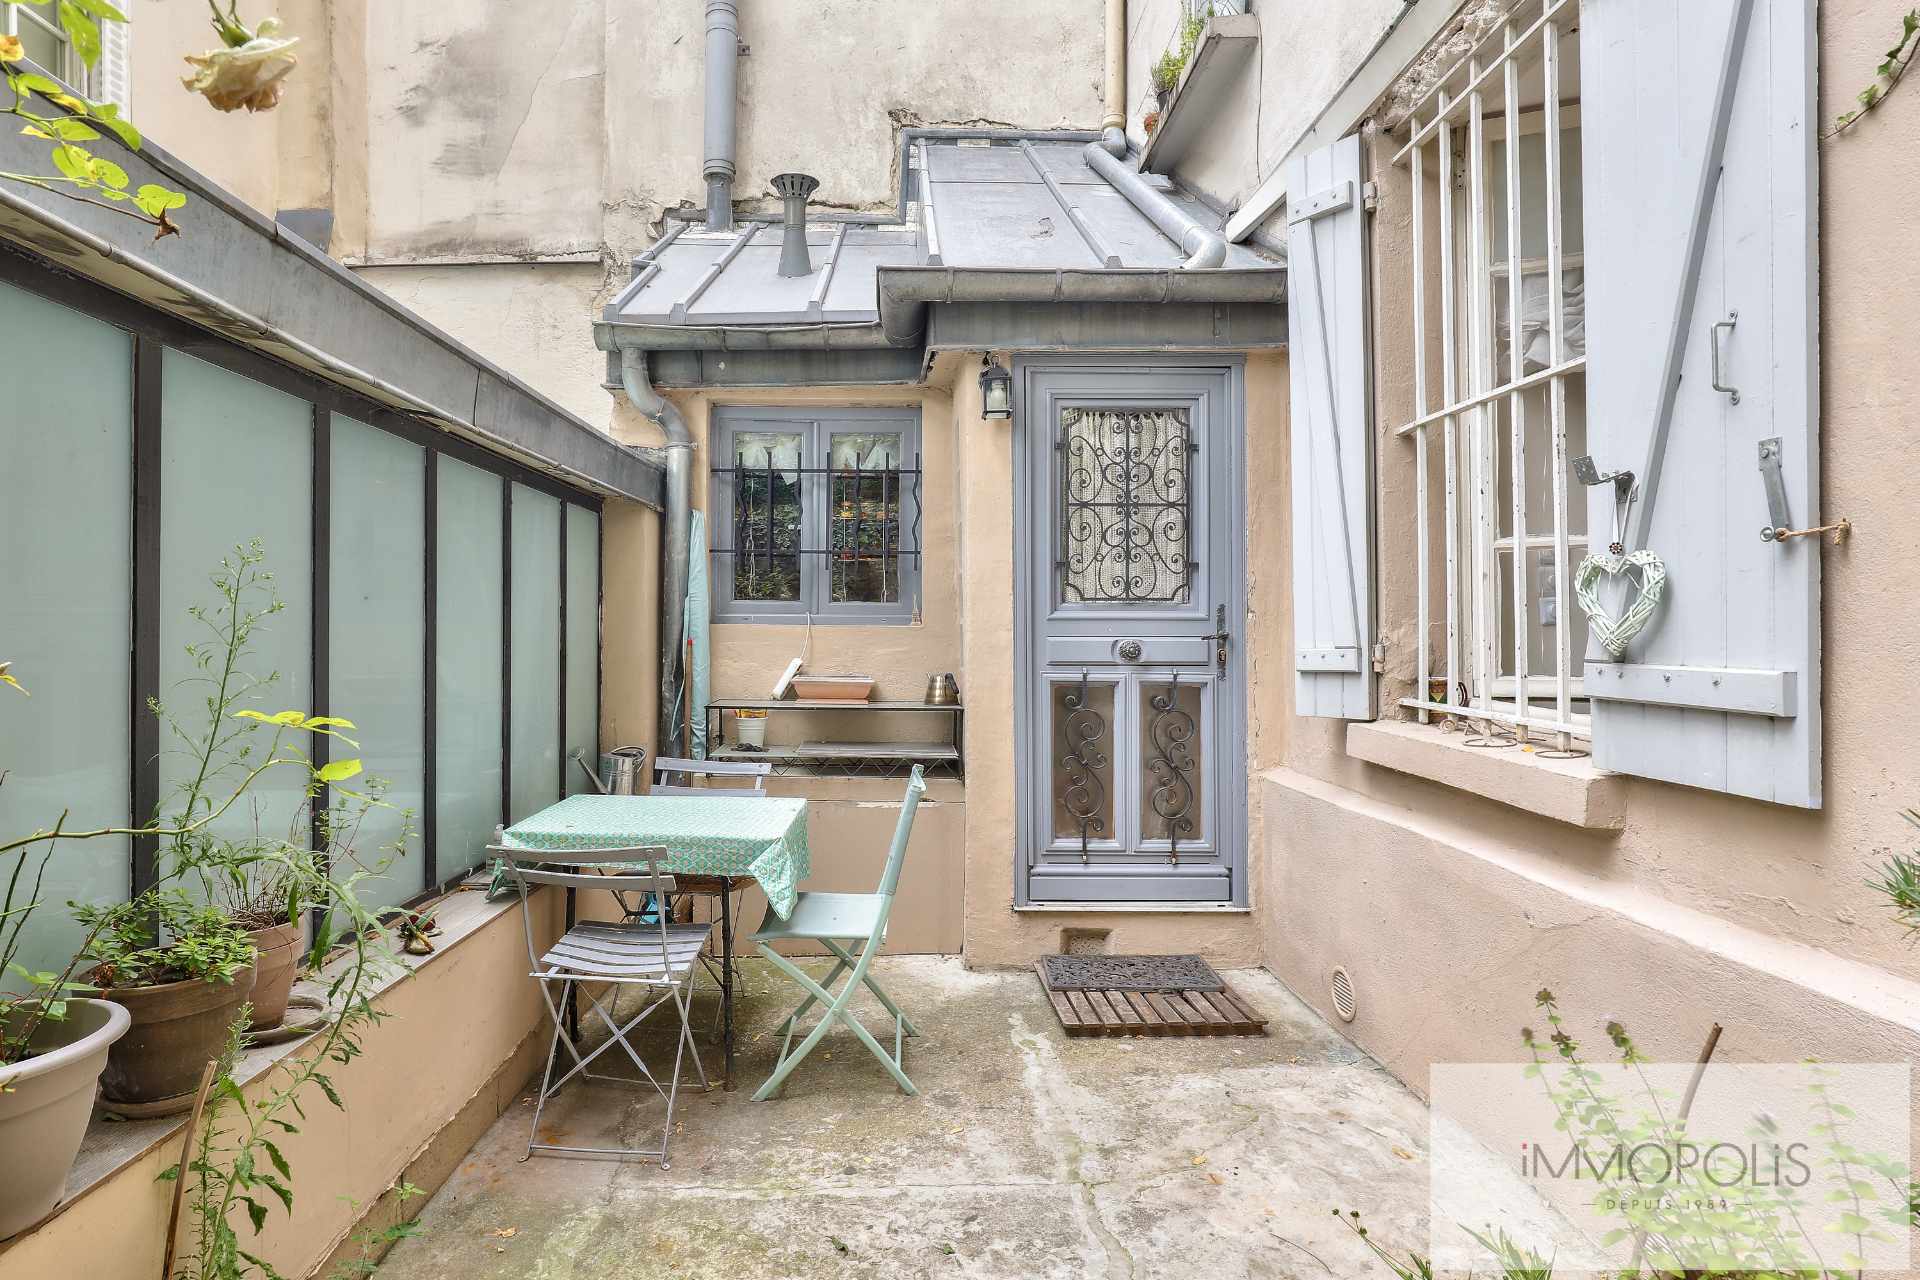 Montmartre, rue Gabrielle, magnifique 2 pièces entièrement rénové avec pierres, briques et poutres apparentes : comme une maison ! 2